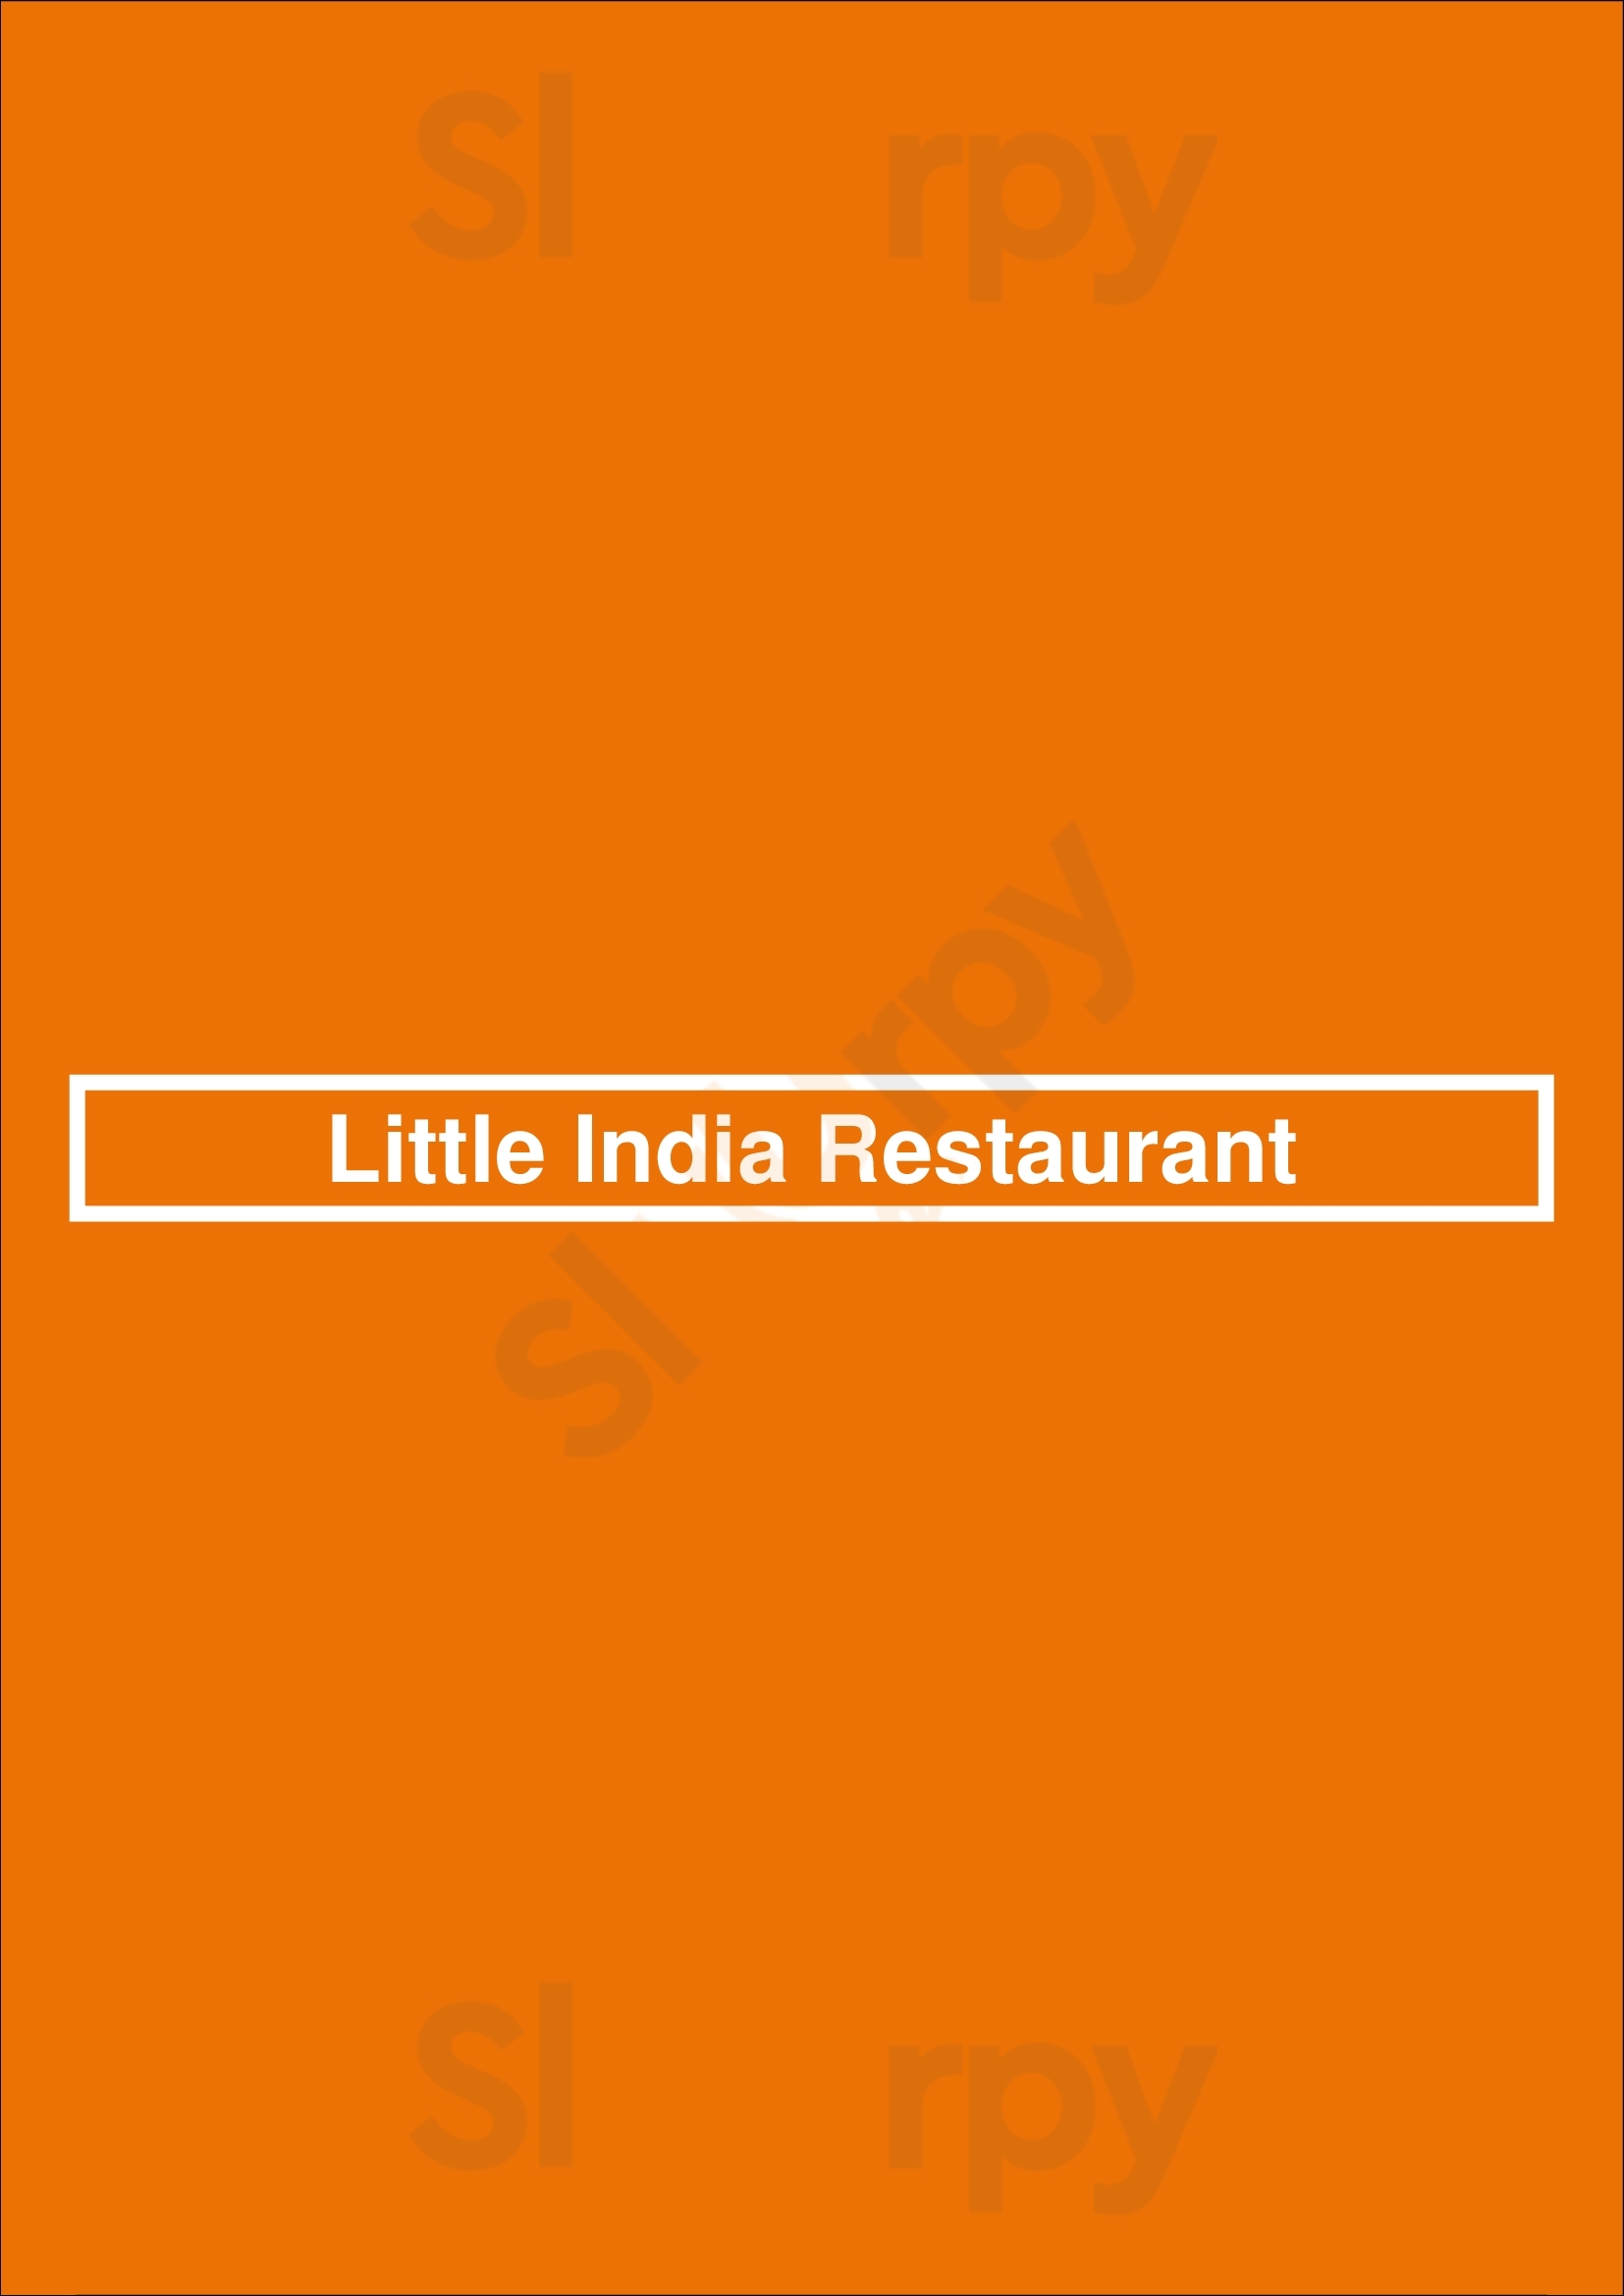 Little India Restaurant & Bar Wash Park Du Denver Menu - 1